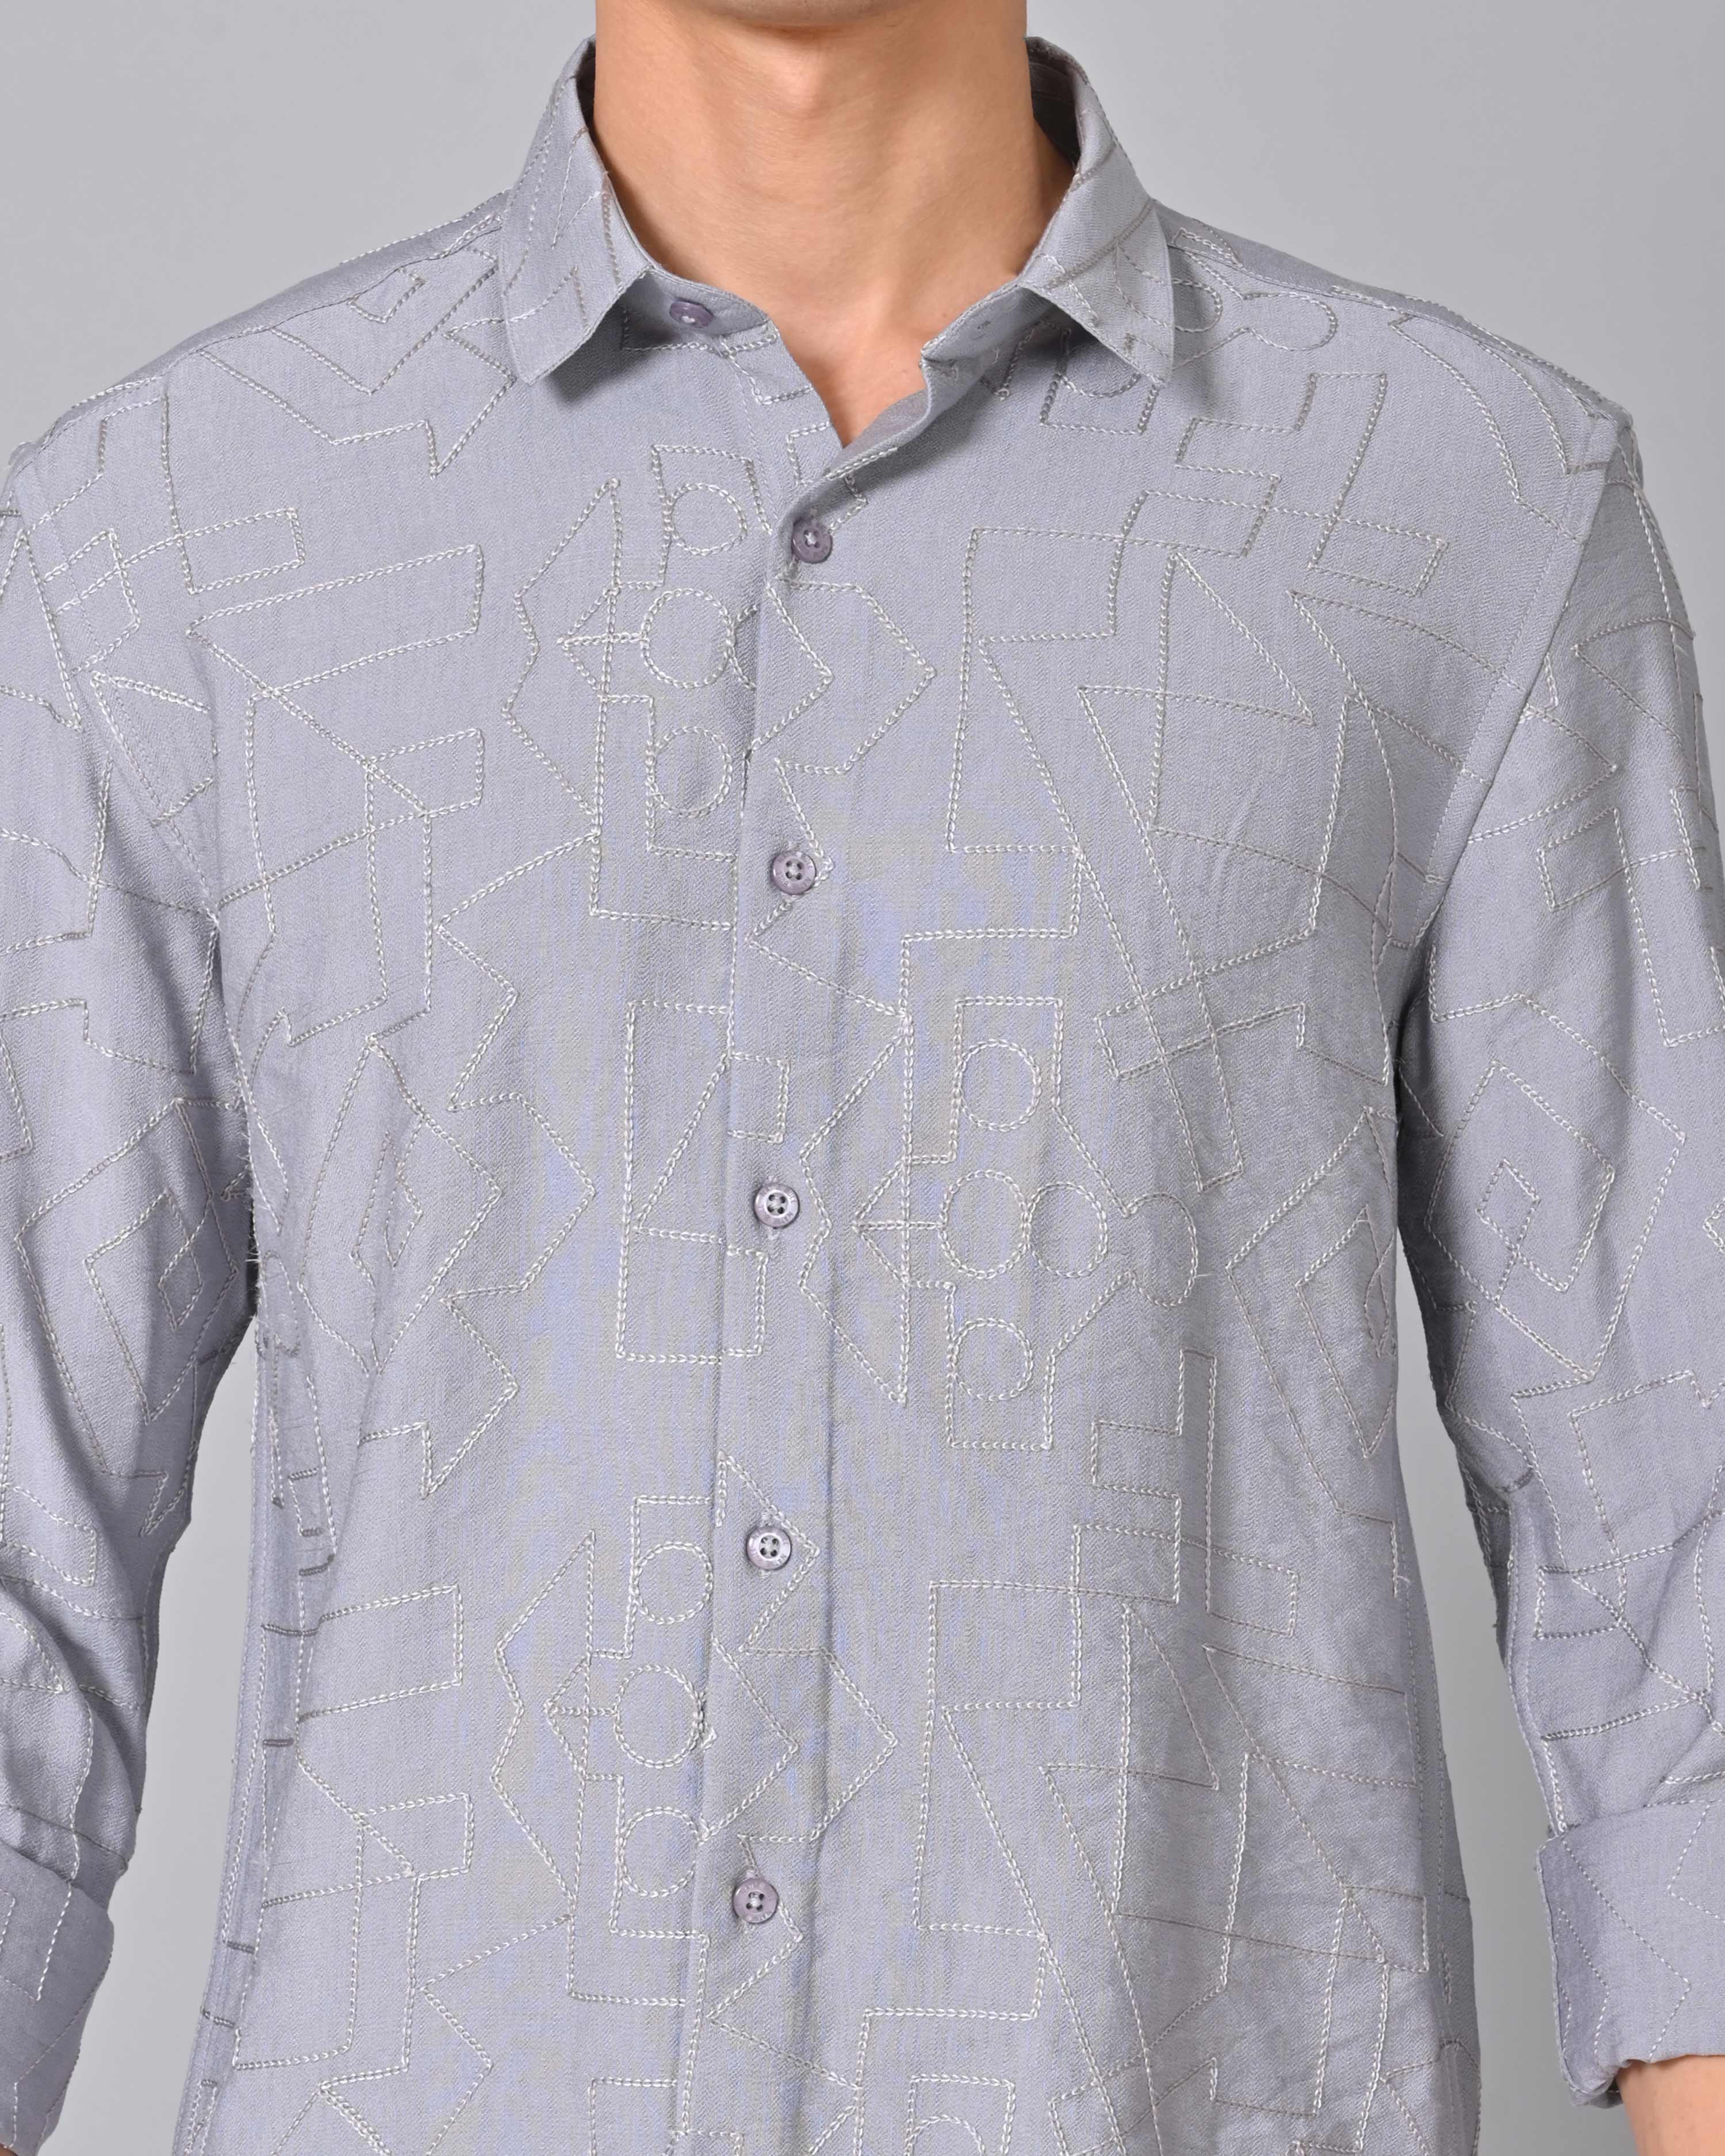 Shop Men's Embroidered Light Slate Blue Shirt